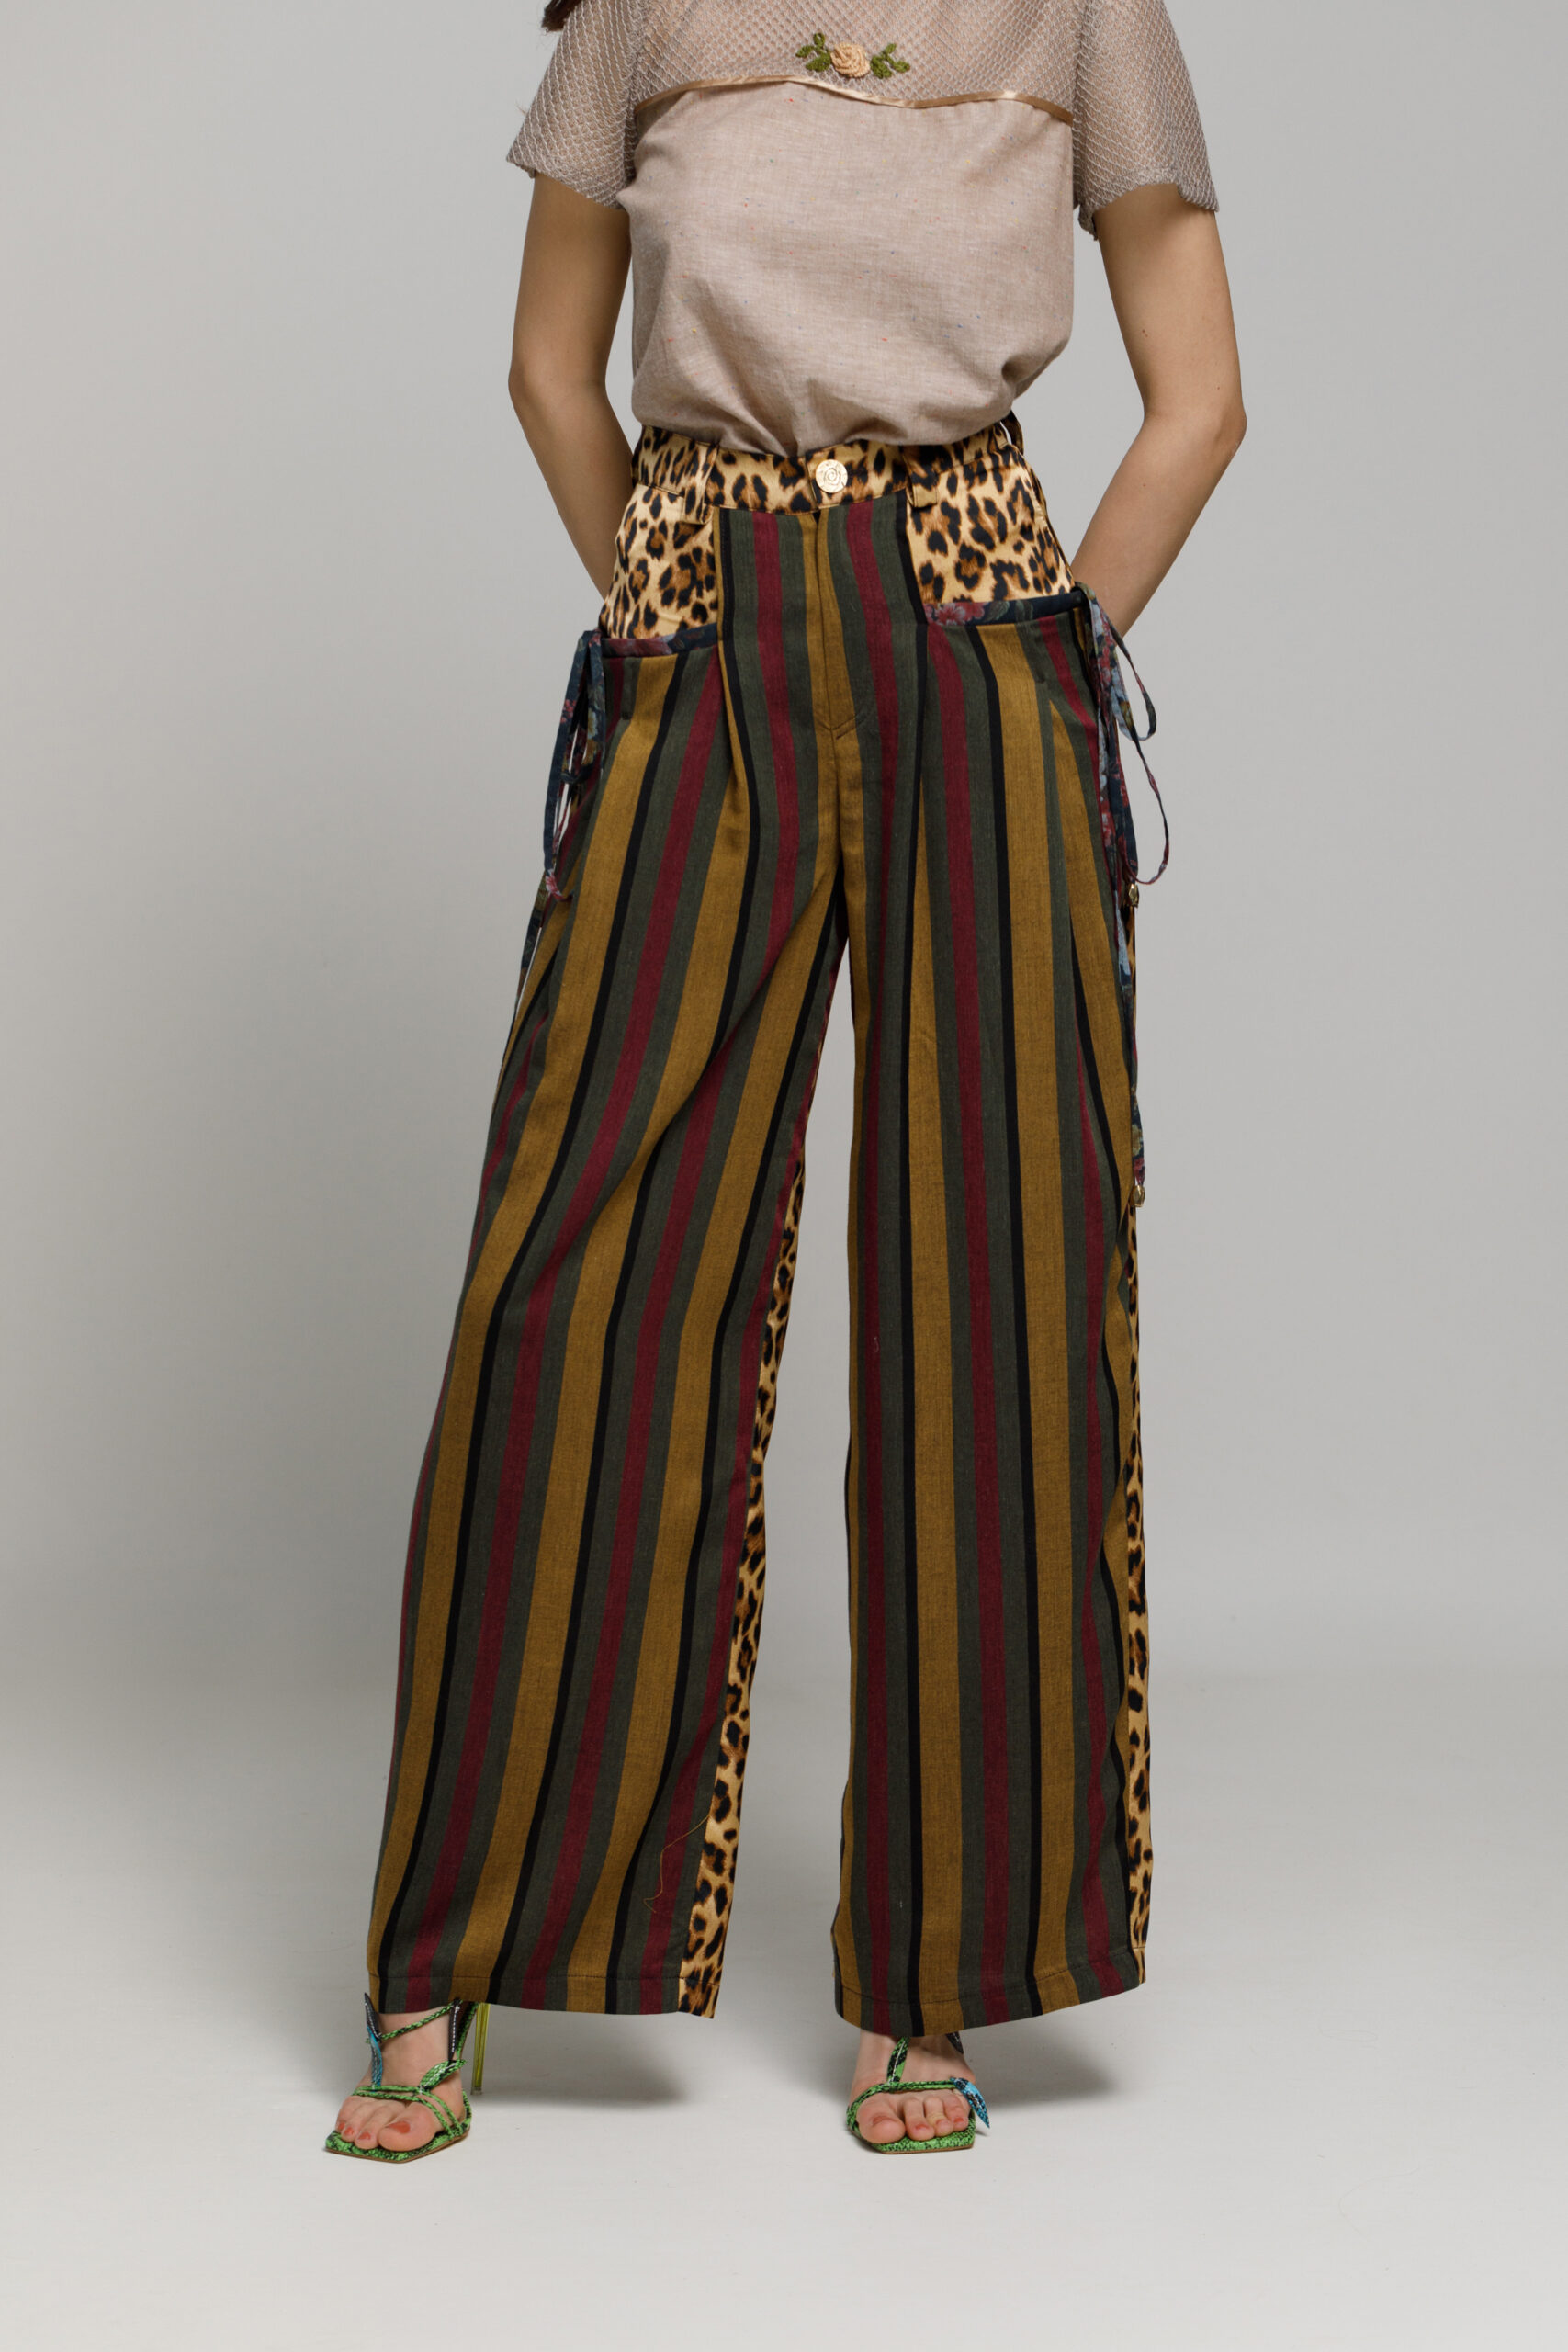 Pantalon BONNIE cu imprimeu animal-print. Materiale naturale, design unicat, cu broderie si aplicatii handmade